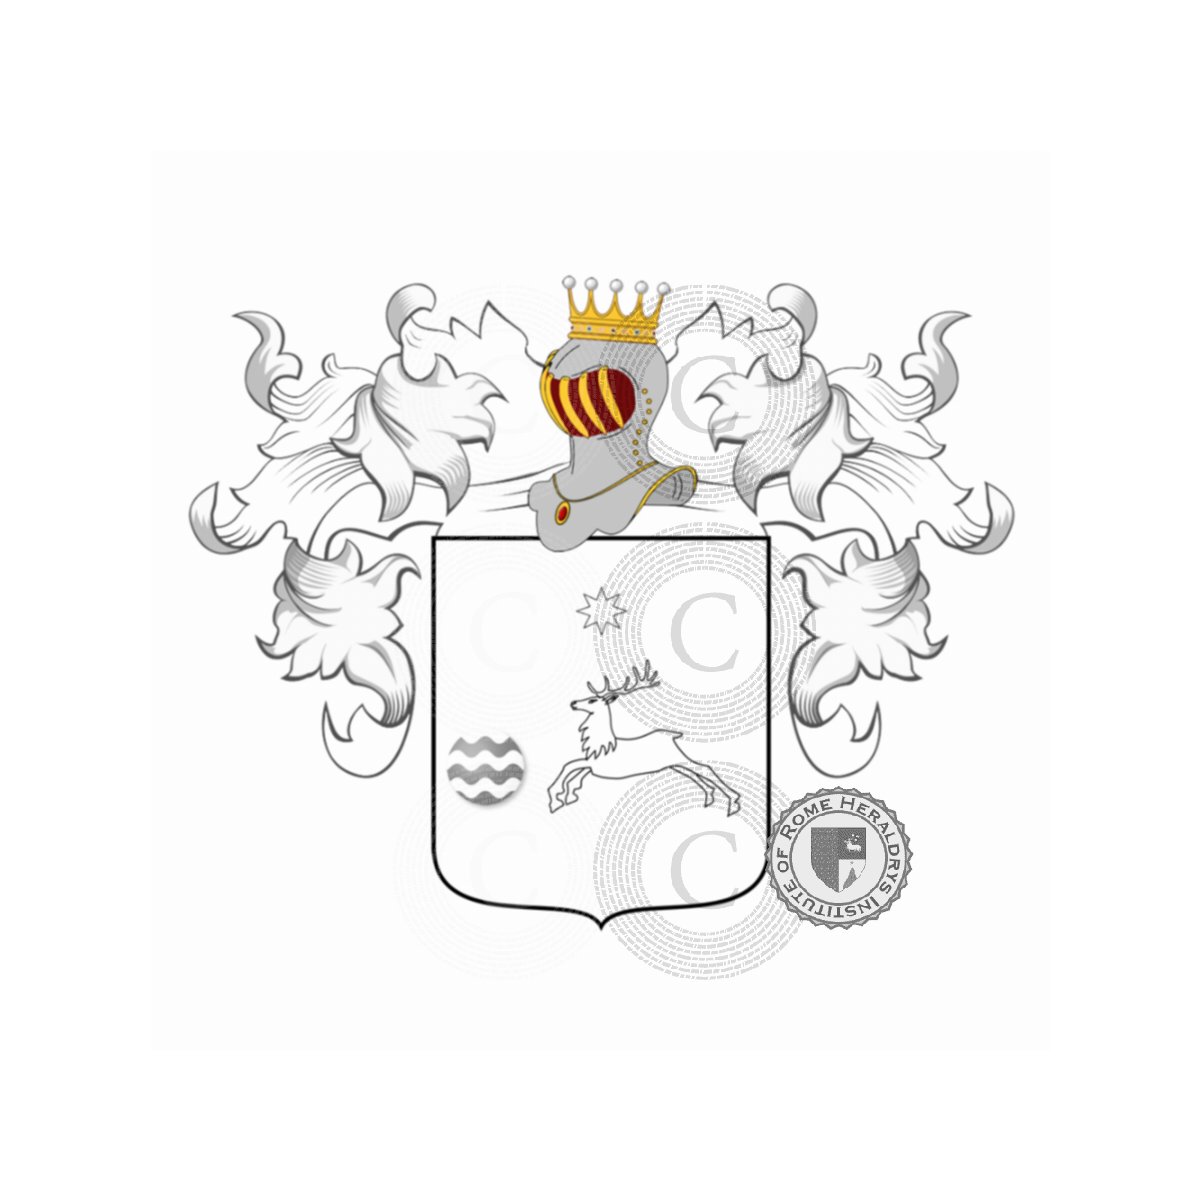 Wappen der FamilieLa Russa, Russa